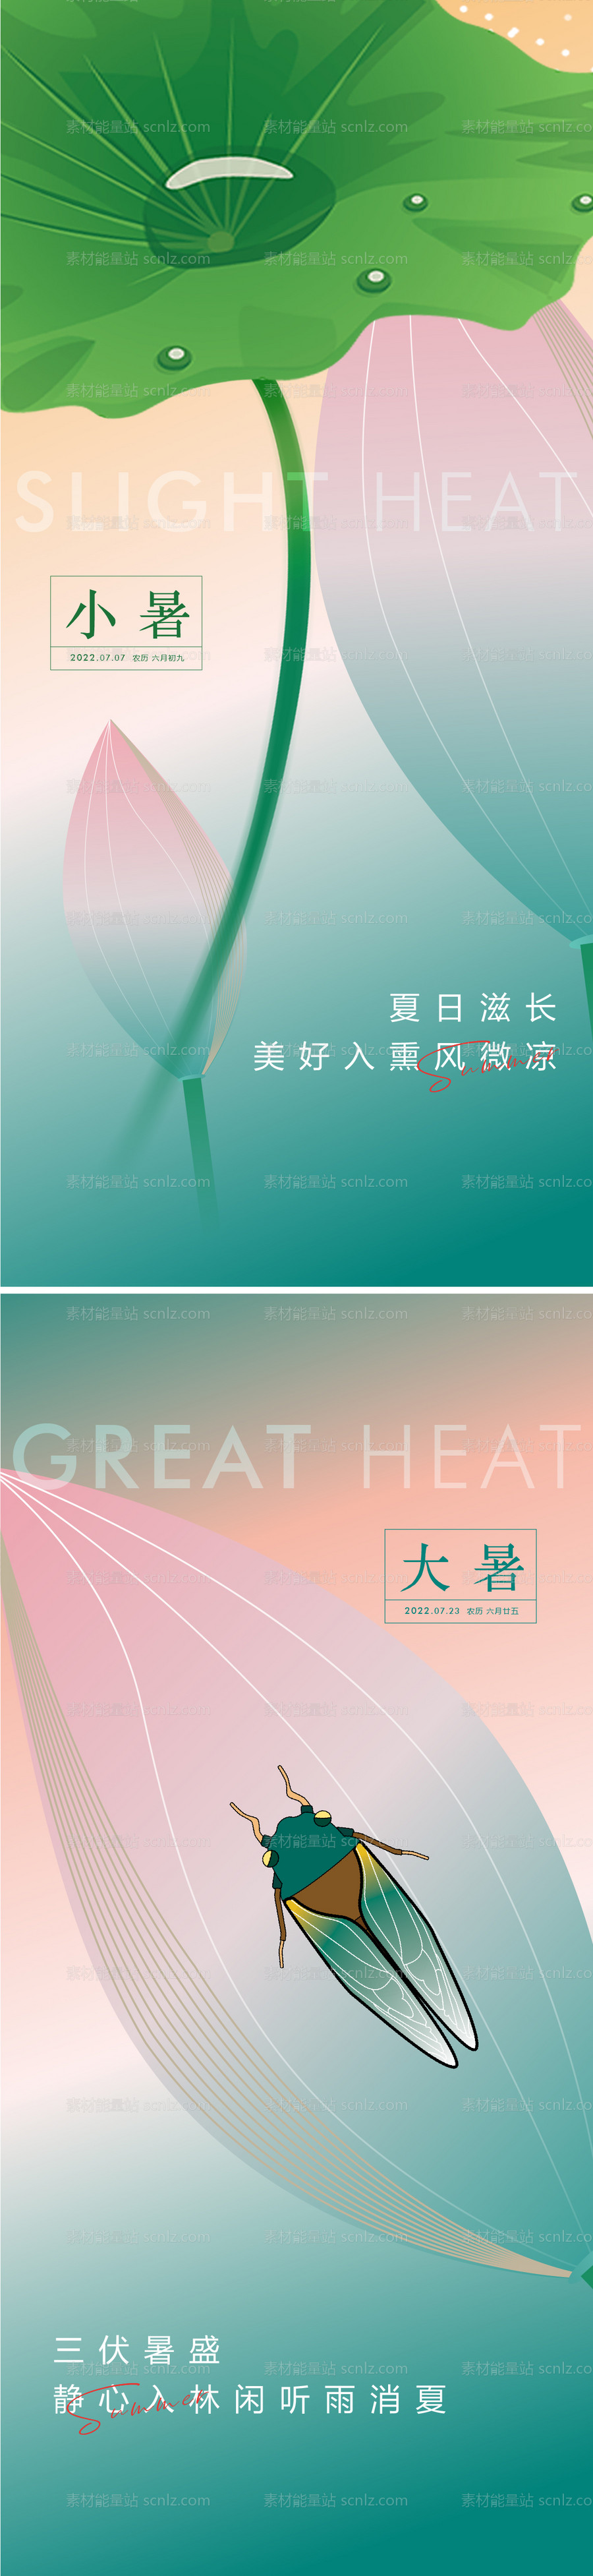 素材能量站-小暑大暑节气创意海报